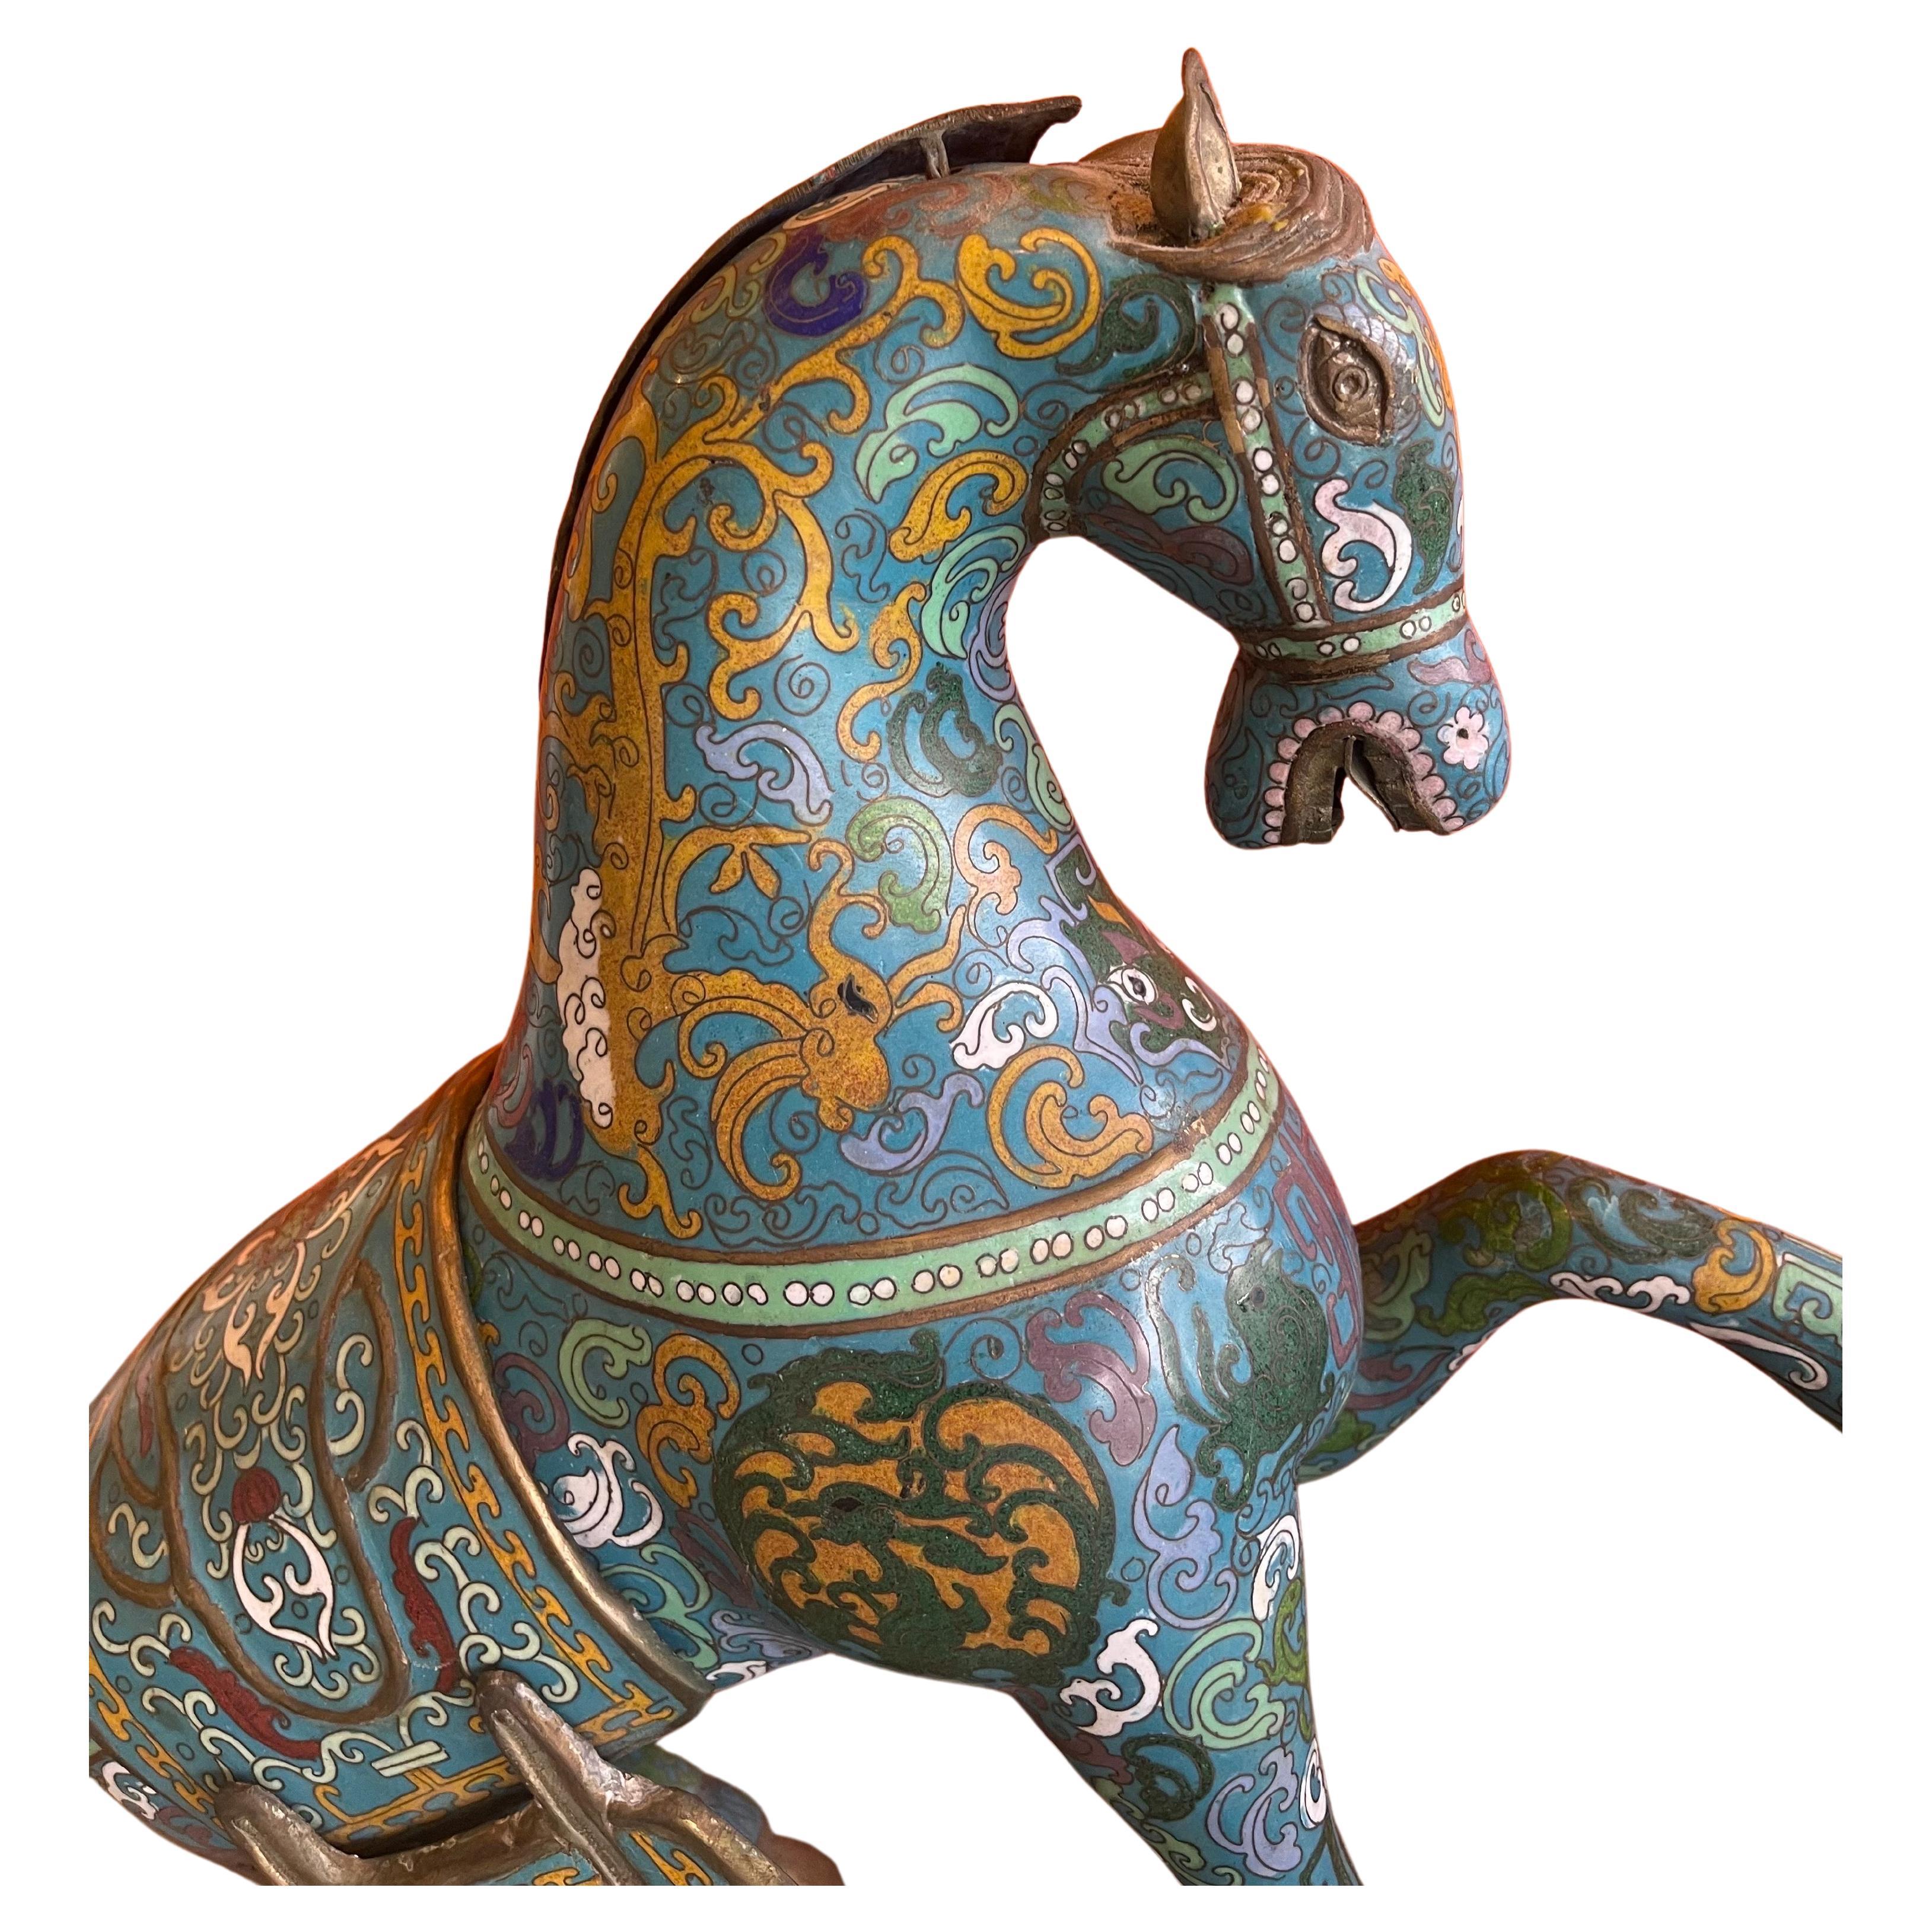 Cloissoné Large Antique Chinese Cloisonné War Horse Sculpture